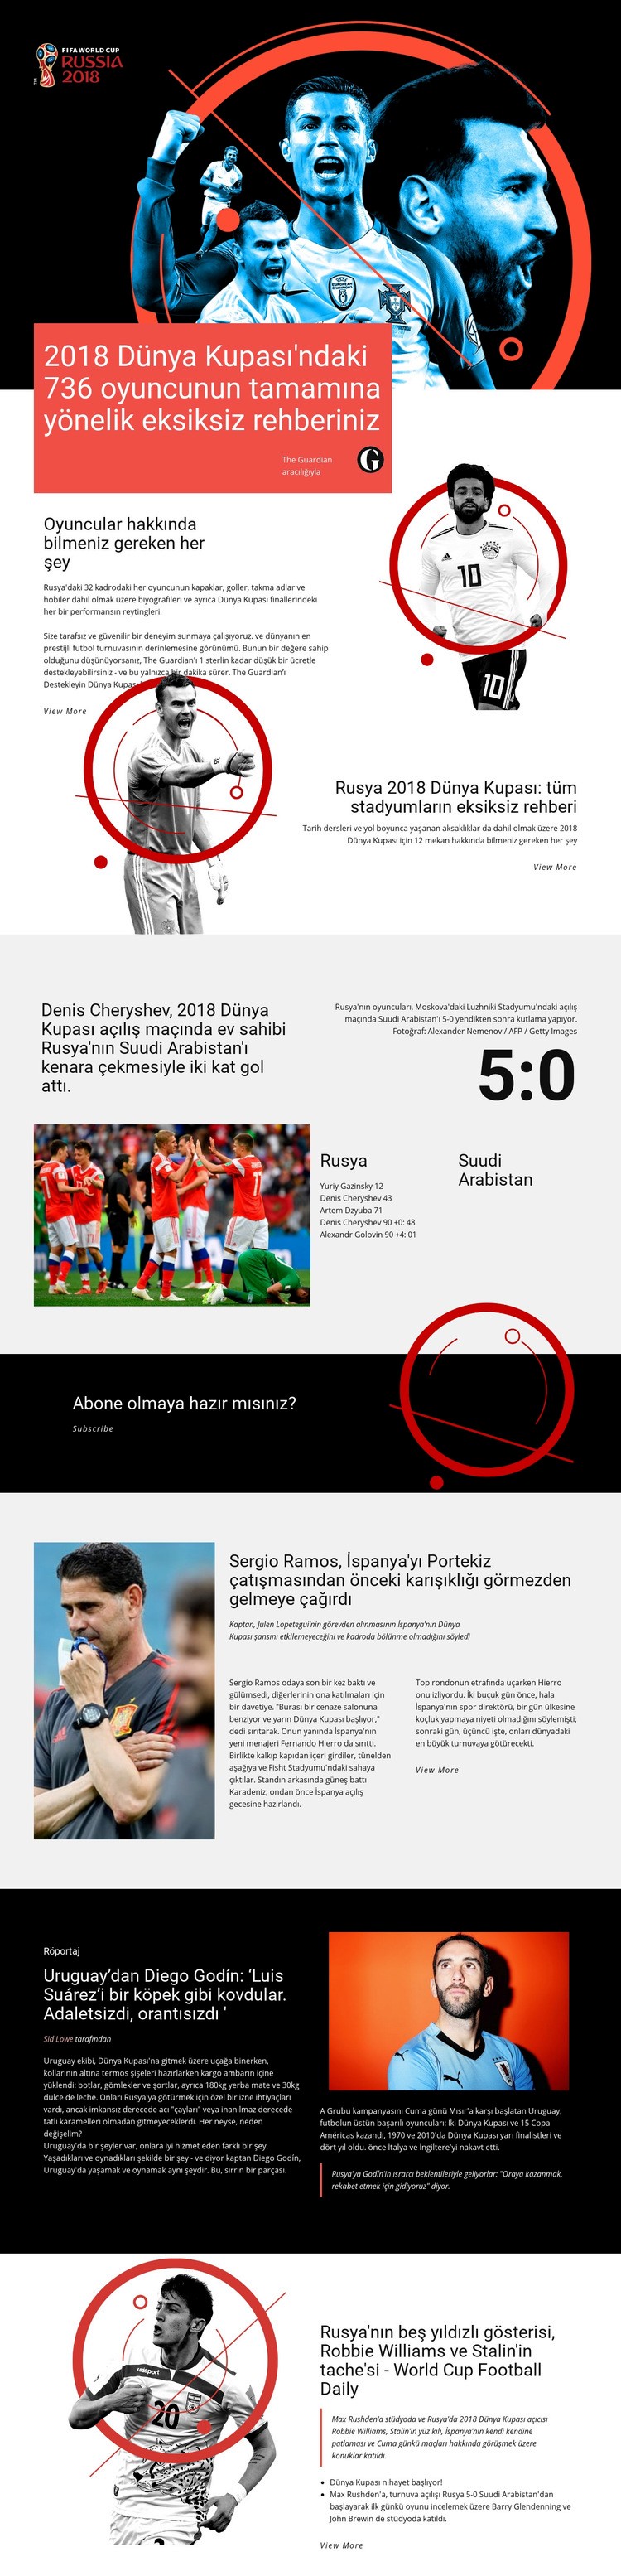 Dünya Kupası Web sitesi tasarımı